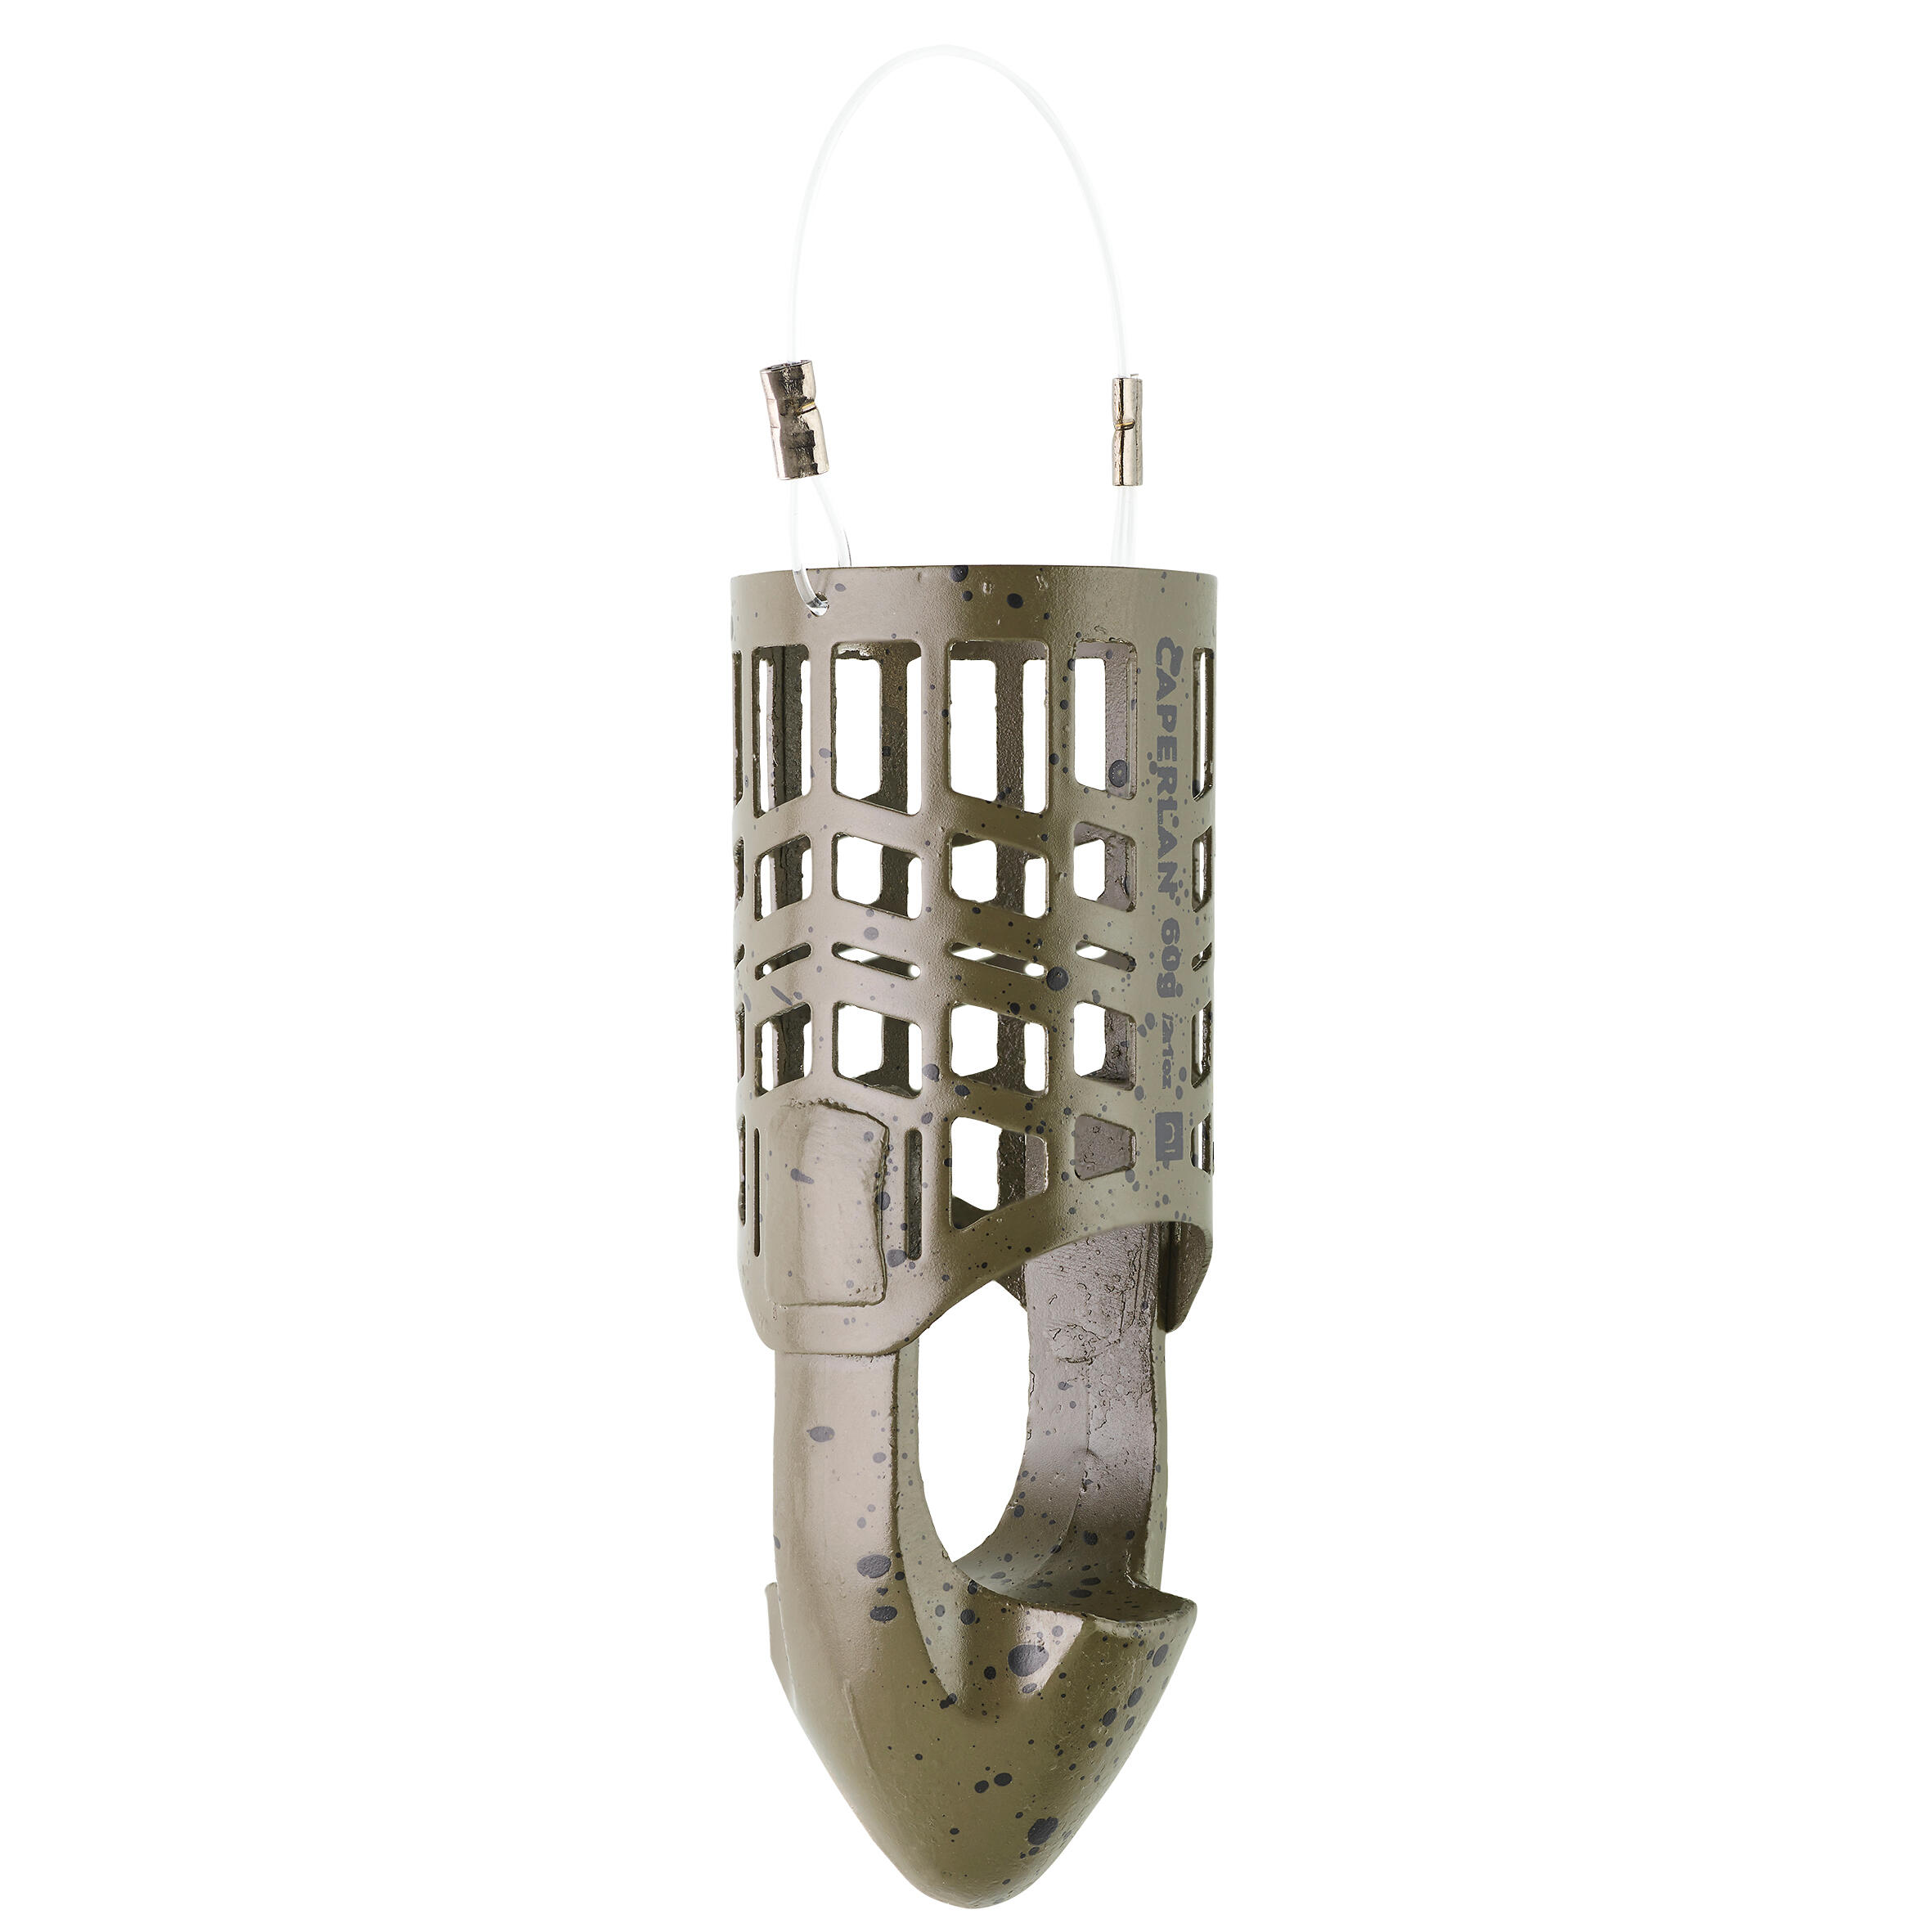 Cage distance feeder DST M 60g 2/7